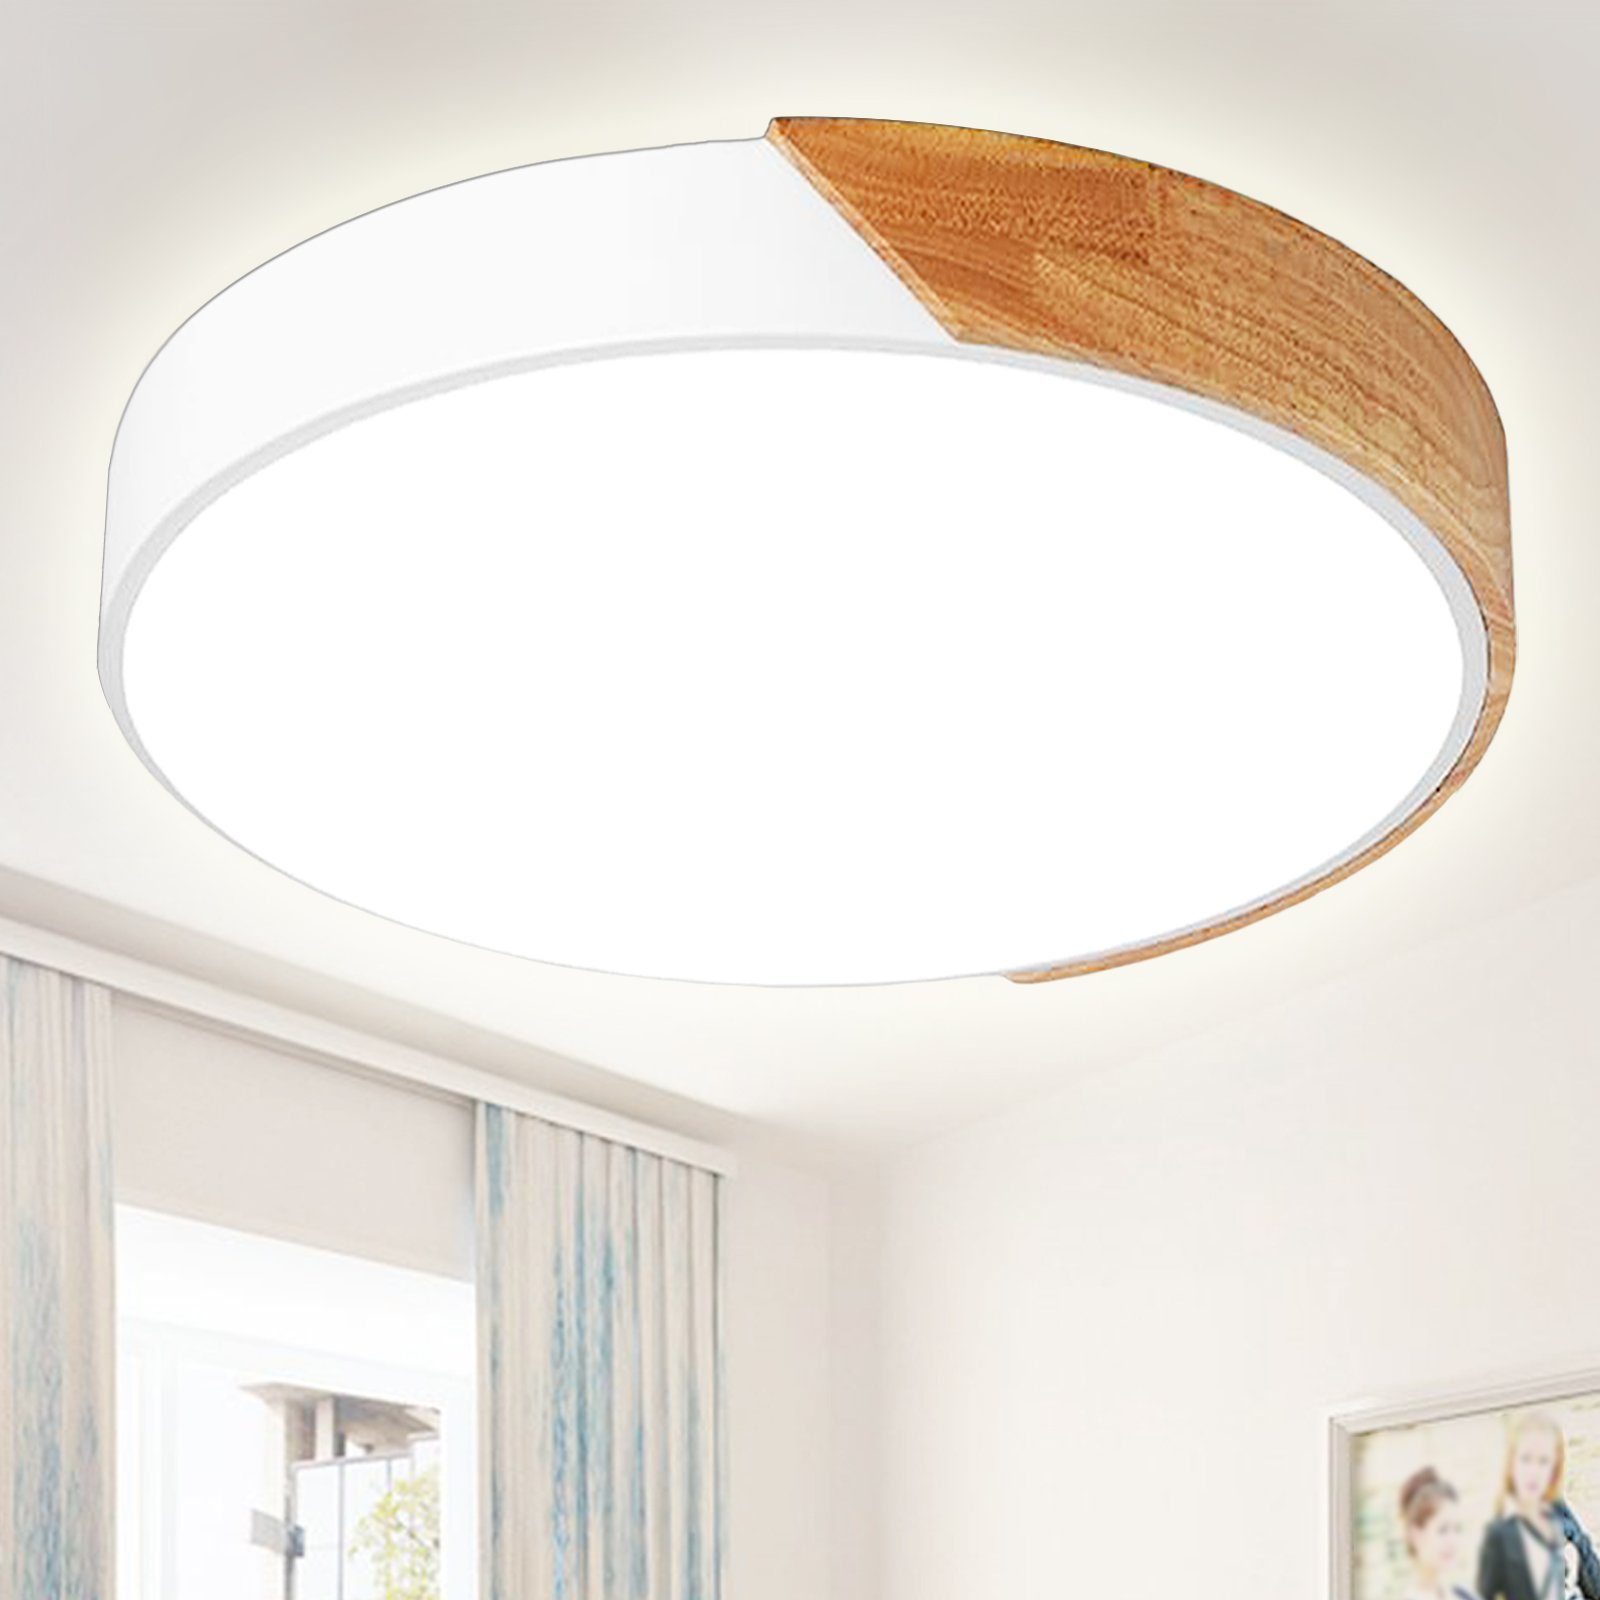 RGB LED Decken Lampe DIMMBAR Holz Design Wohn Zimmer Fernbedienung Leuchte natur 